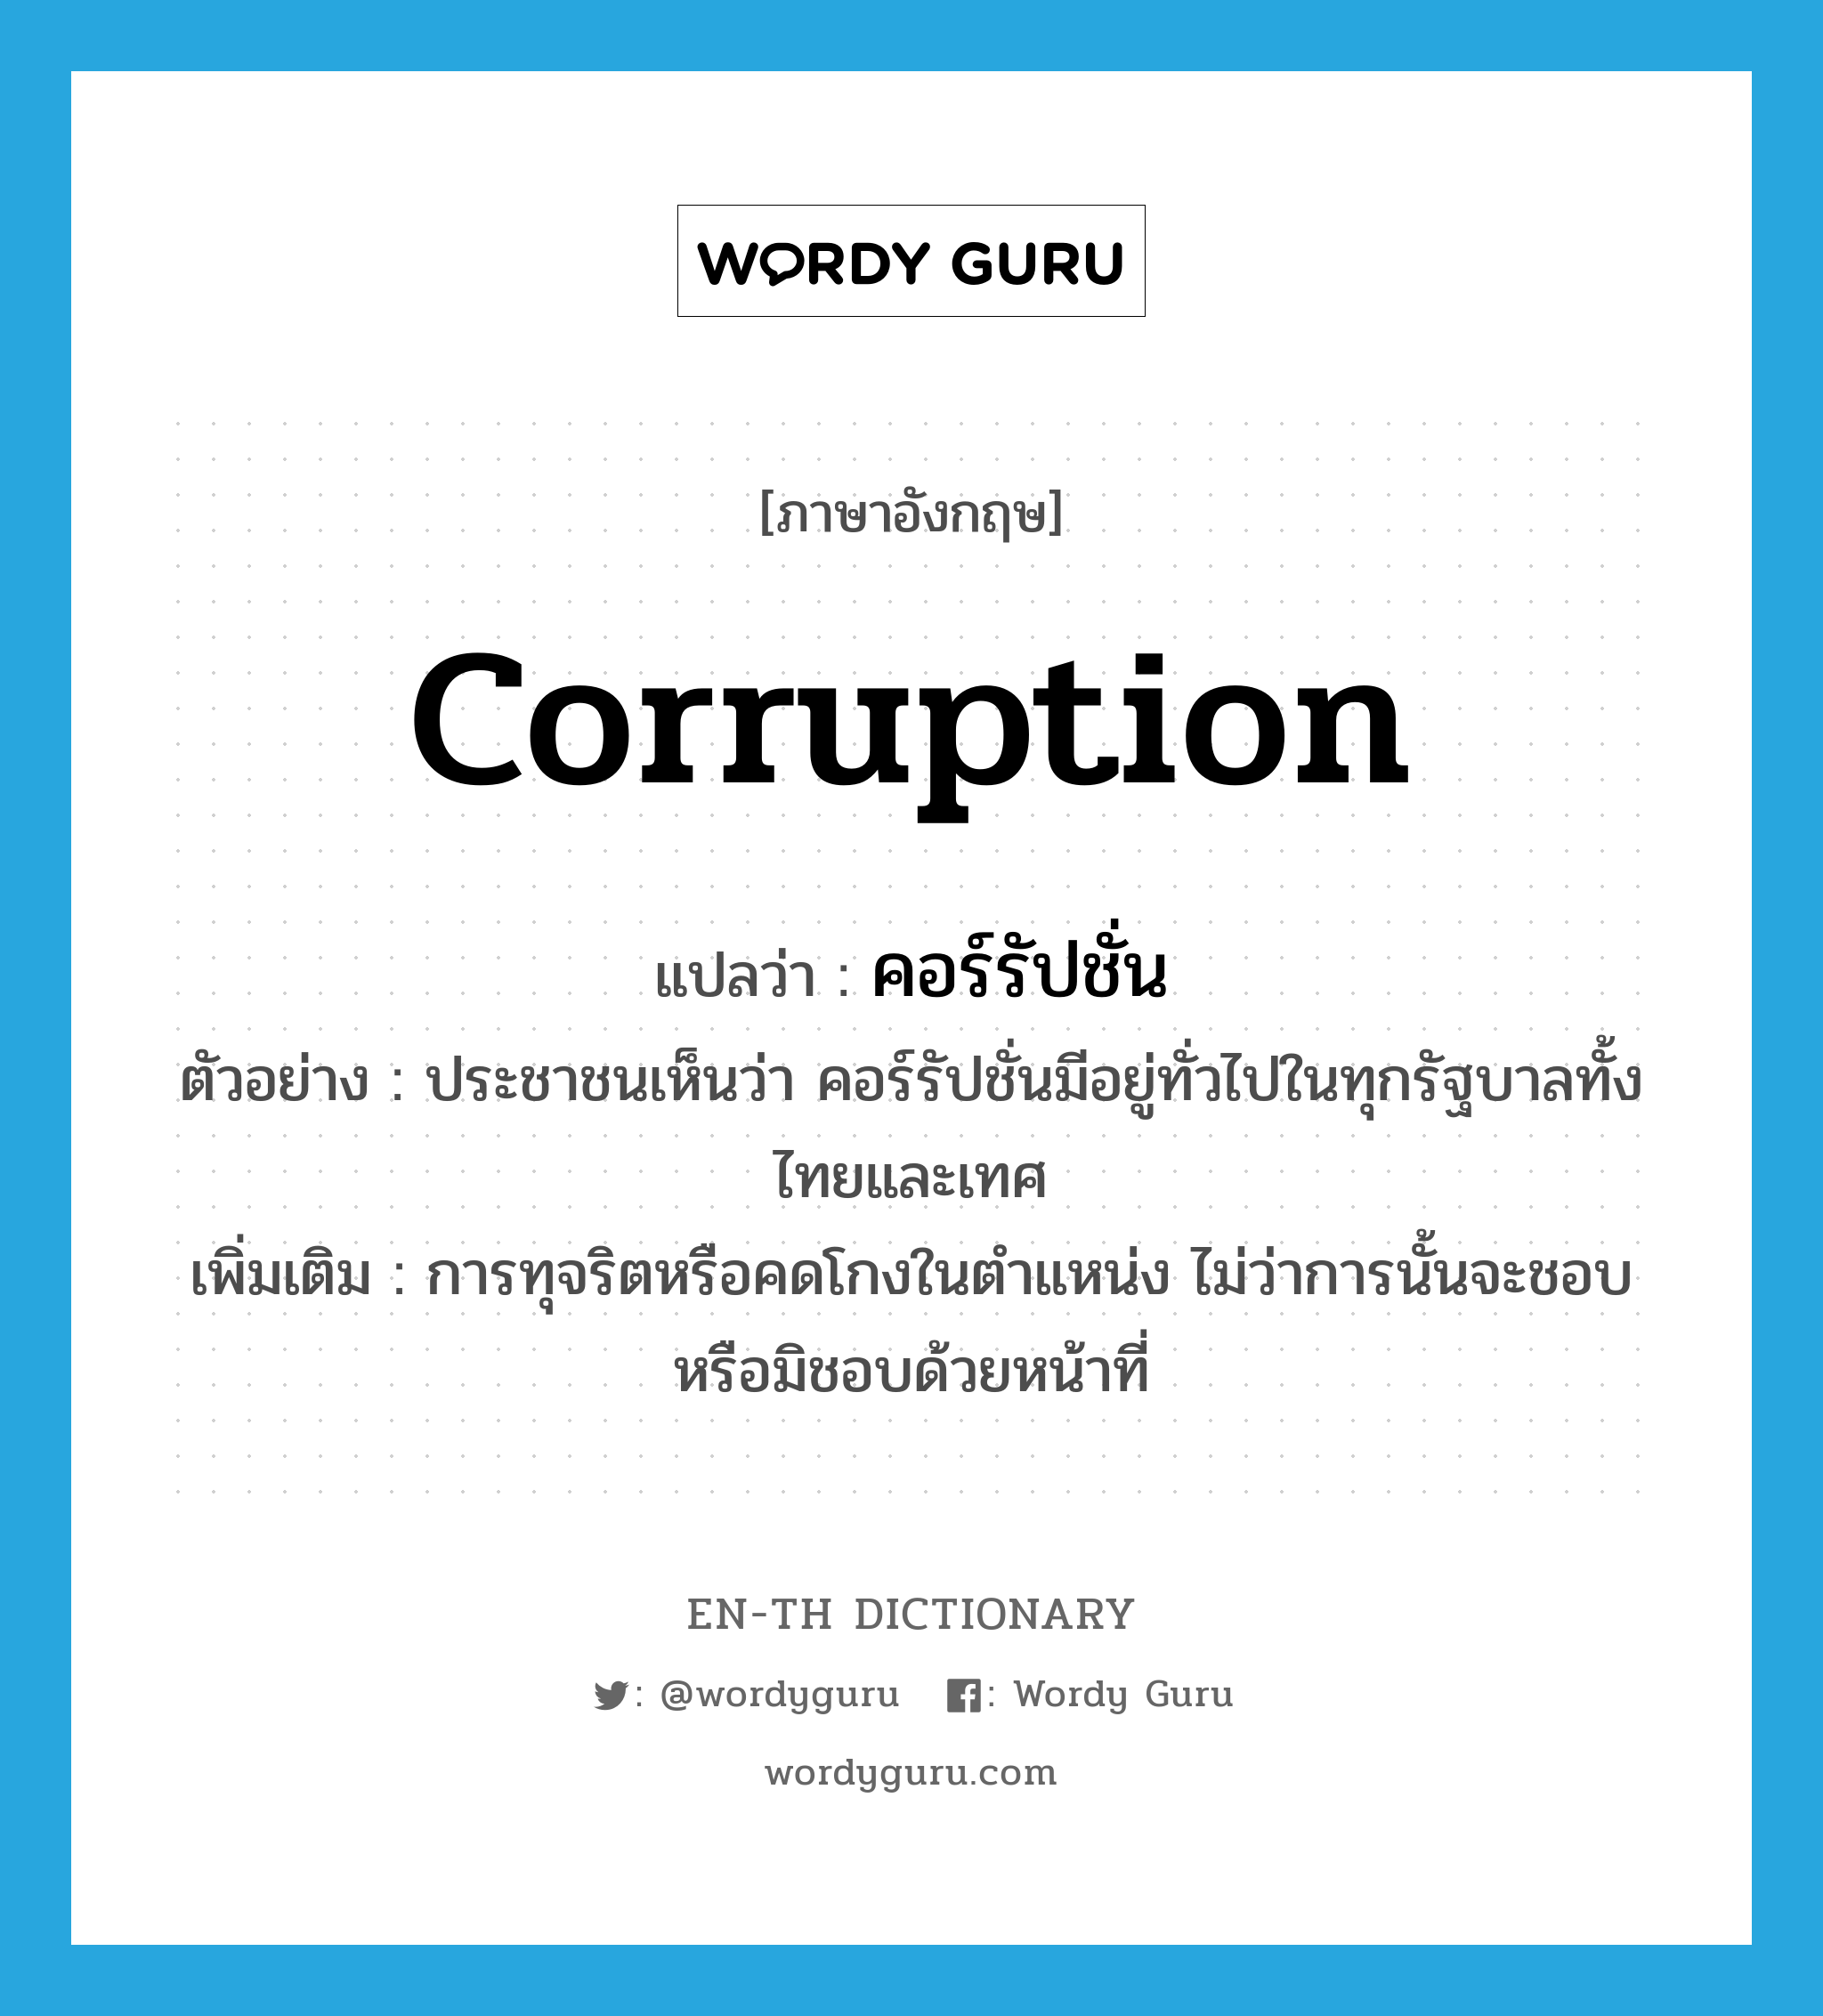 corruption แปลว่า?, คำศัพท์ภาษาอังกฤษ corruption แปลว่า คอร์รัปชั่น ประเภท N ตัวอย่าง ประชาชนเห็นว่า คอร์รัปชั่นมีอยู่ทั่วไปในทุกรัฐบาลทั้งไทยและเทศ เพิ่มเติม การทุจริตหรือคดโกงในตำแหน่ง ไม่ว่าการนั้นจะชอบหรือมิชอบด้วยหน้าที่ หมวด N